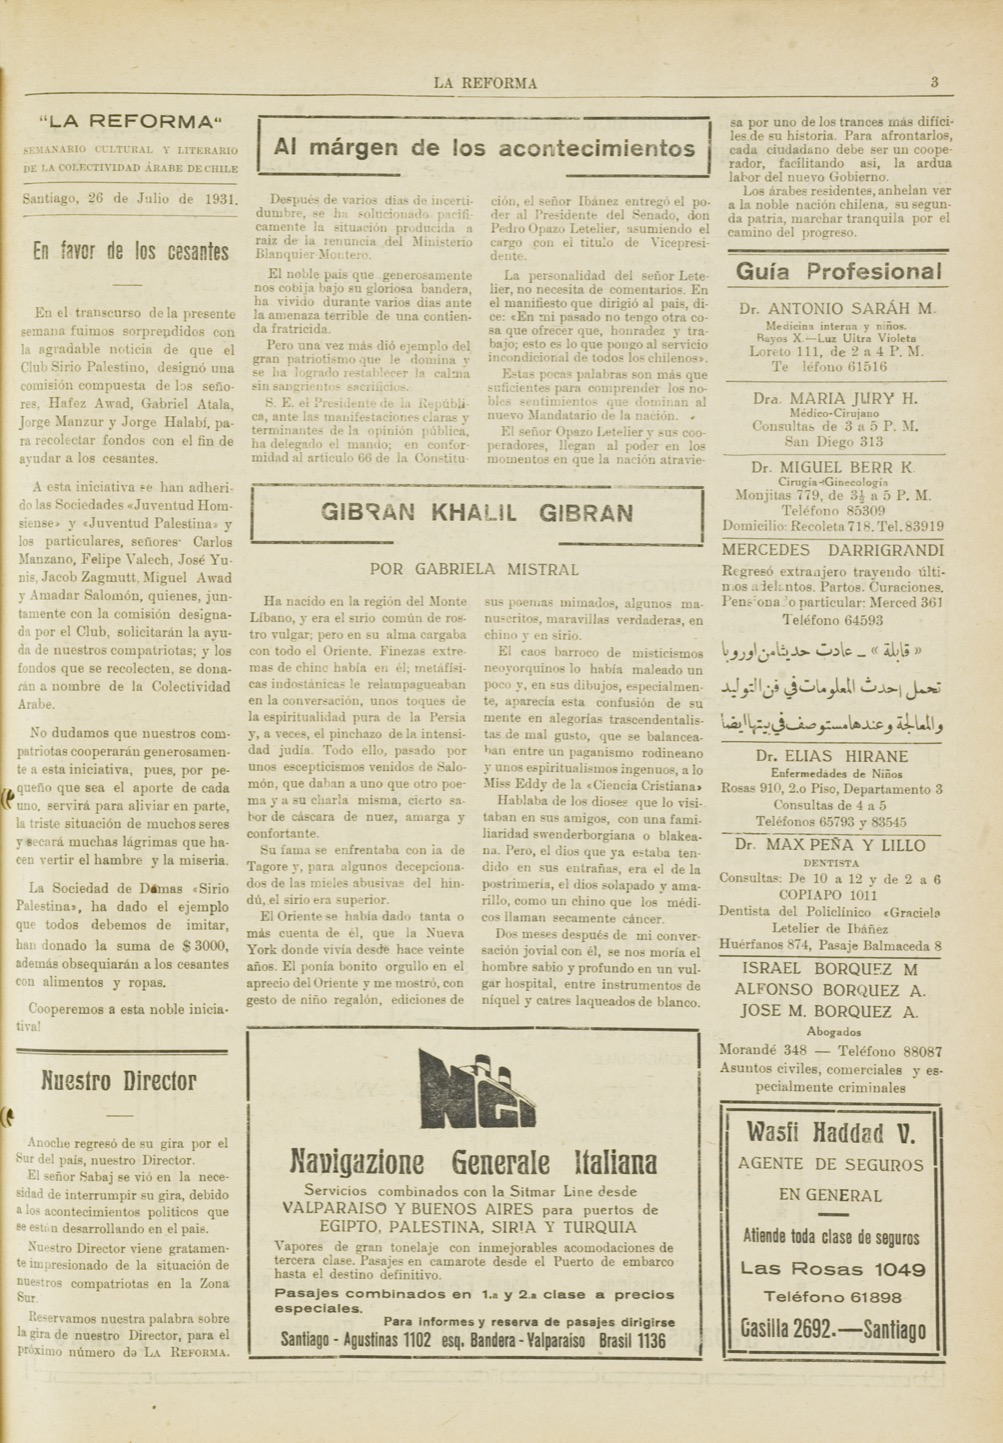 Gabriela Mistral, "Gibran Khalil Gibran", La Reforma, Jul 26, 1931, p. 3.